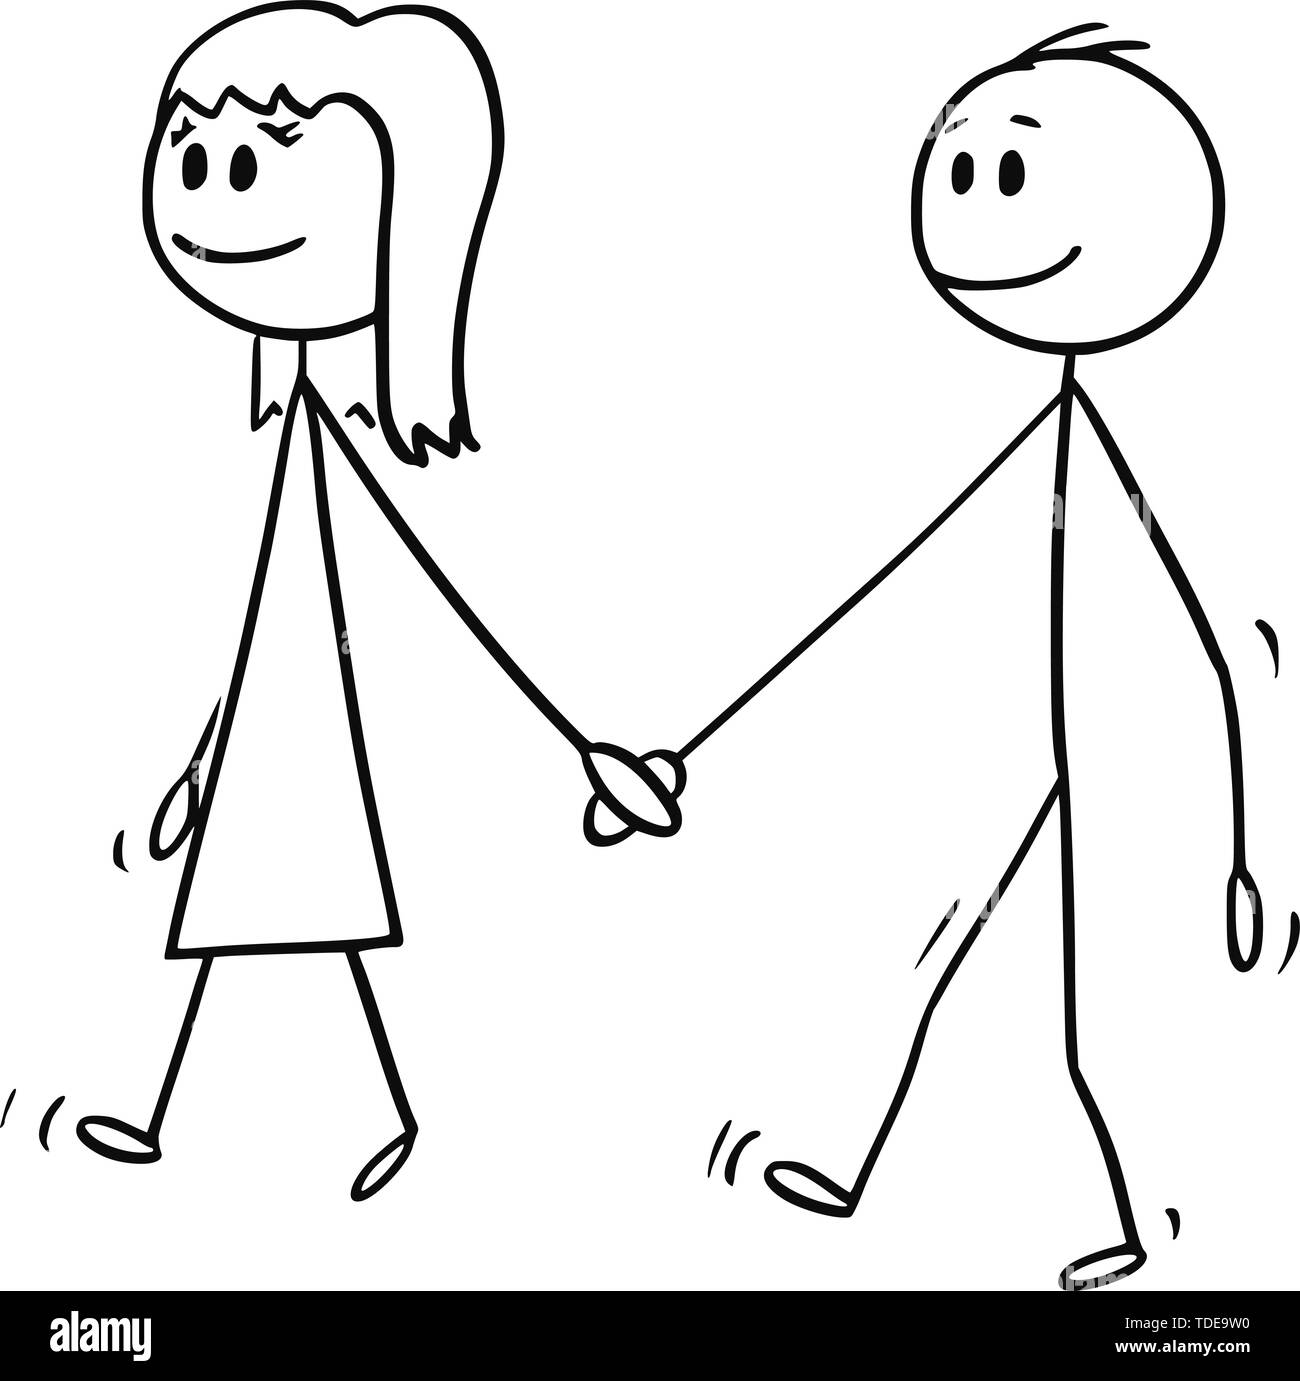 Vektor cartoon Strichmännchen Zeichnung konzeptuelle Darstellung von Mädchen und Jungen bei der Hand und gemeinsam gehen. Stock Vektor